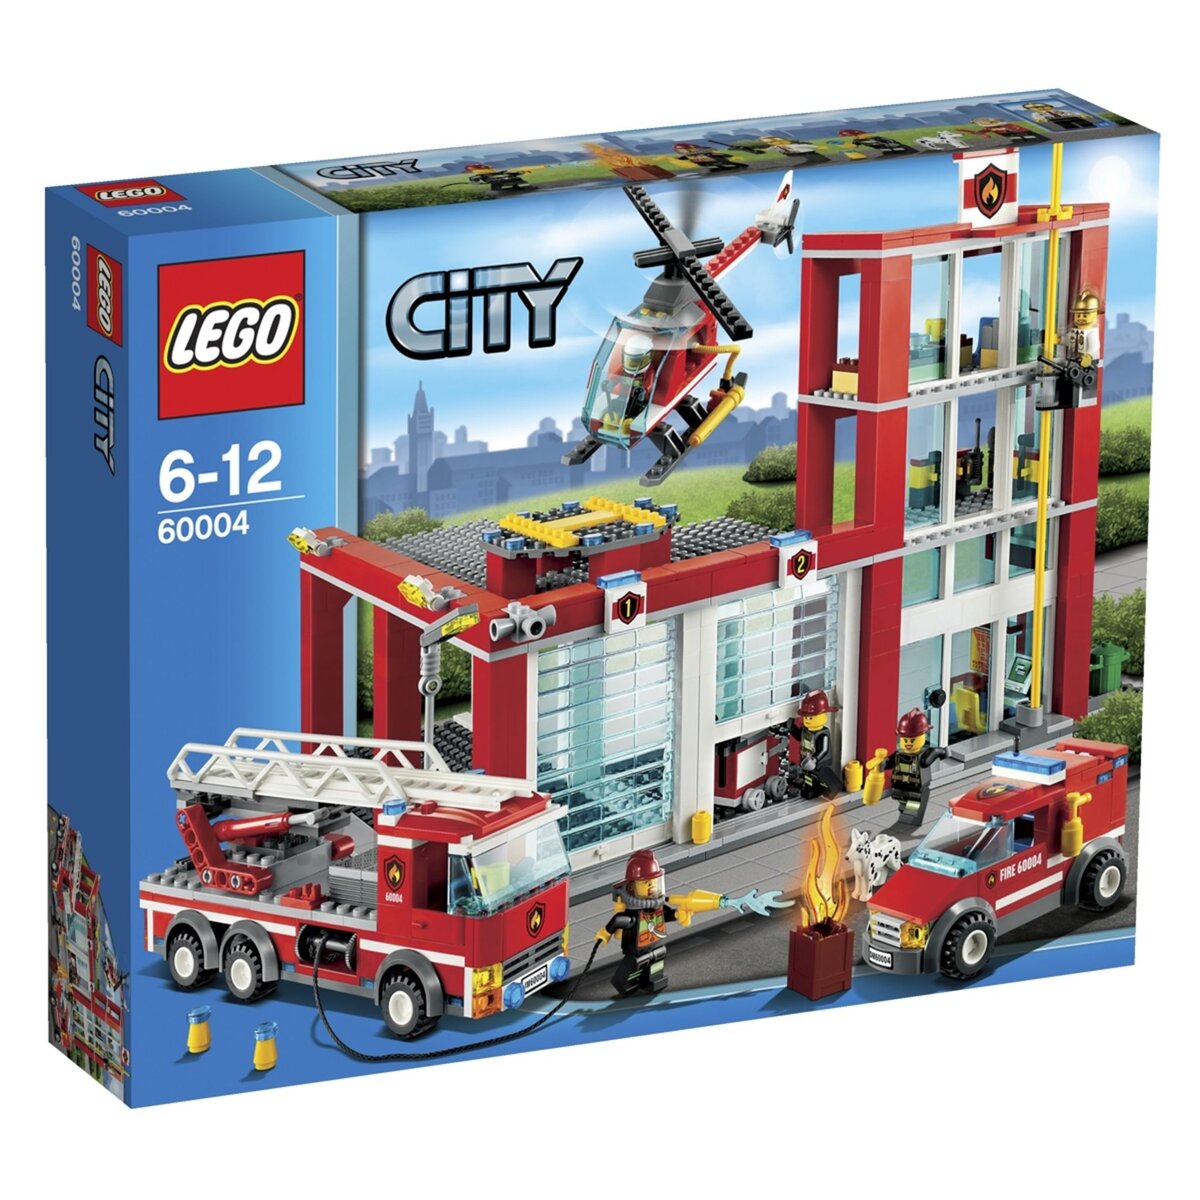 LEGO City 60004